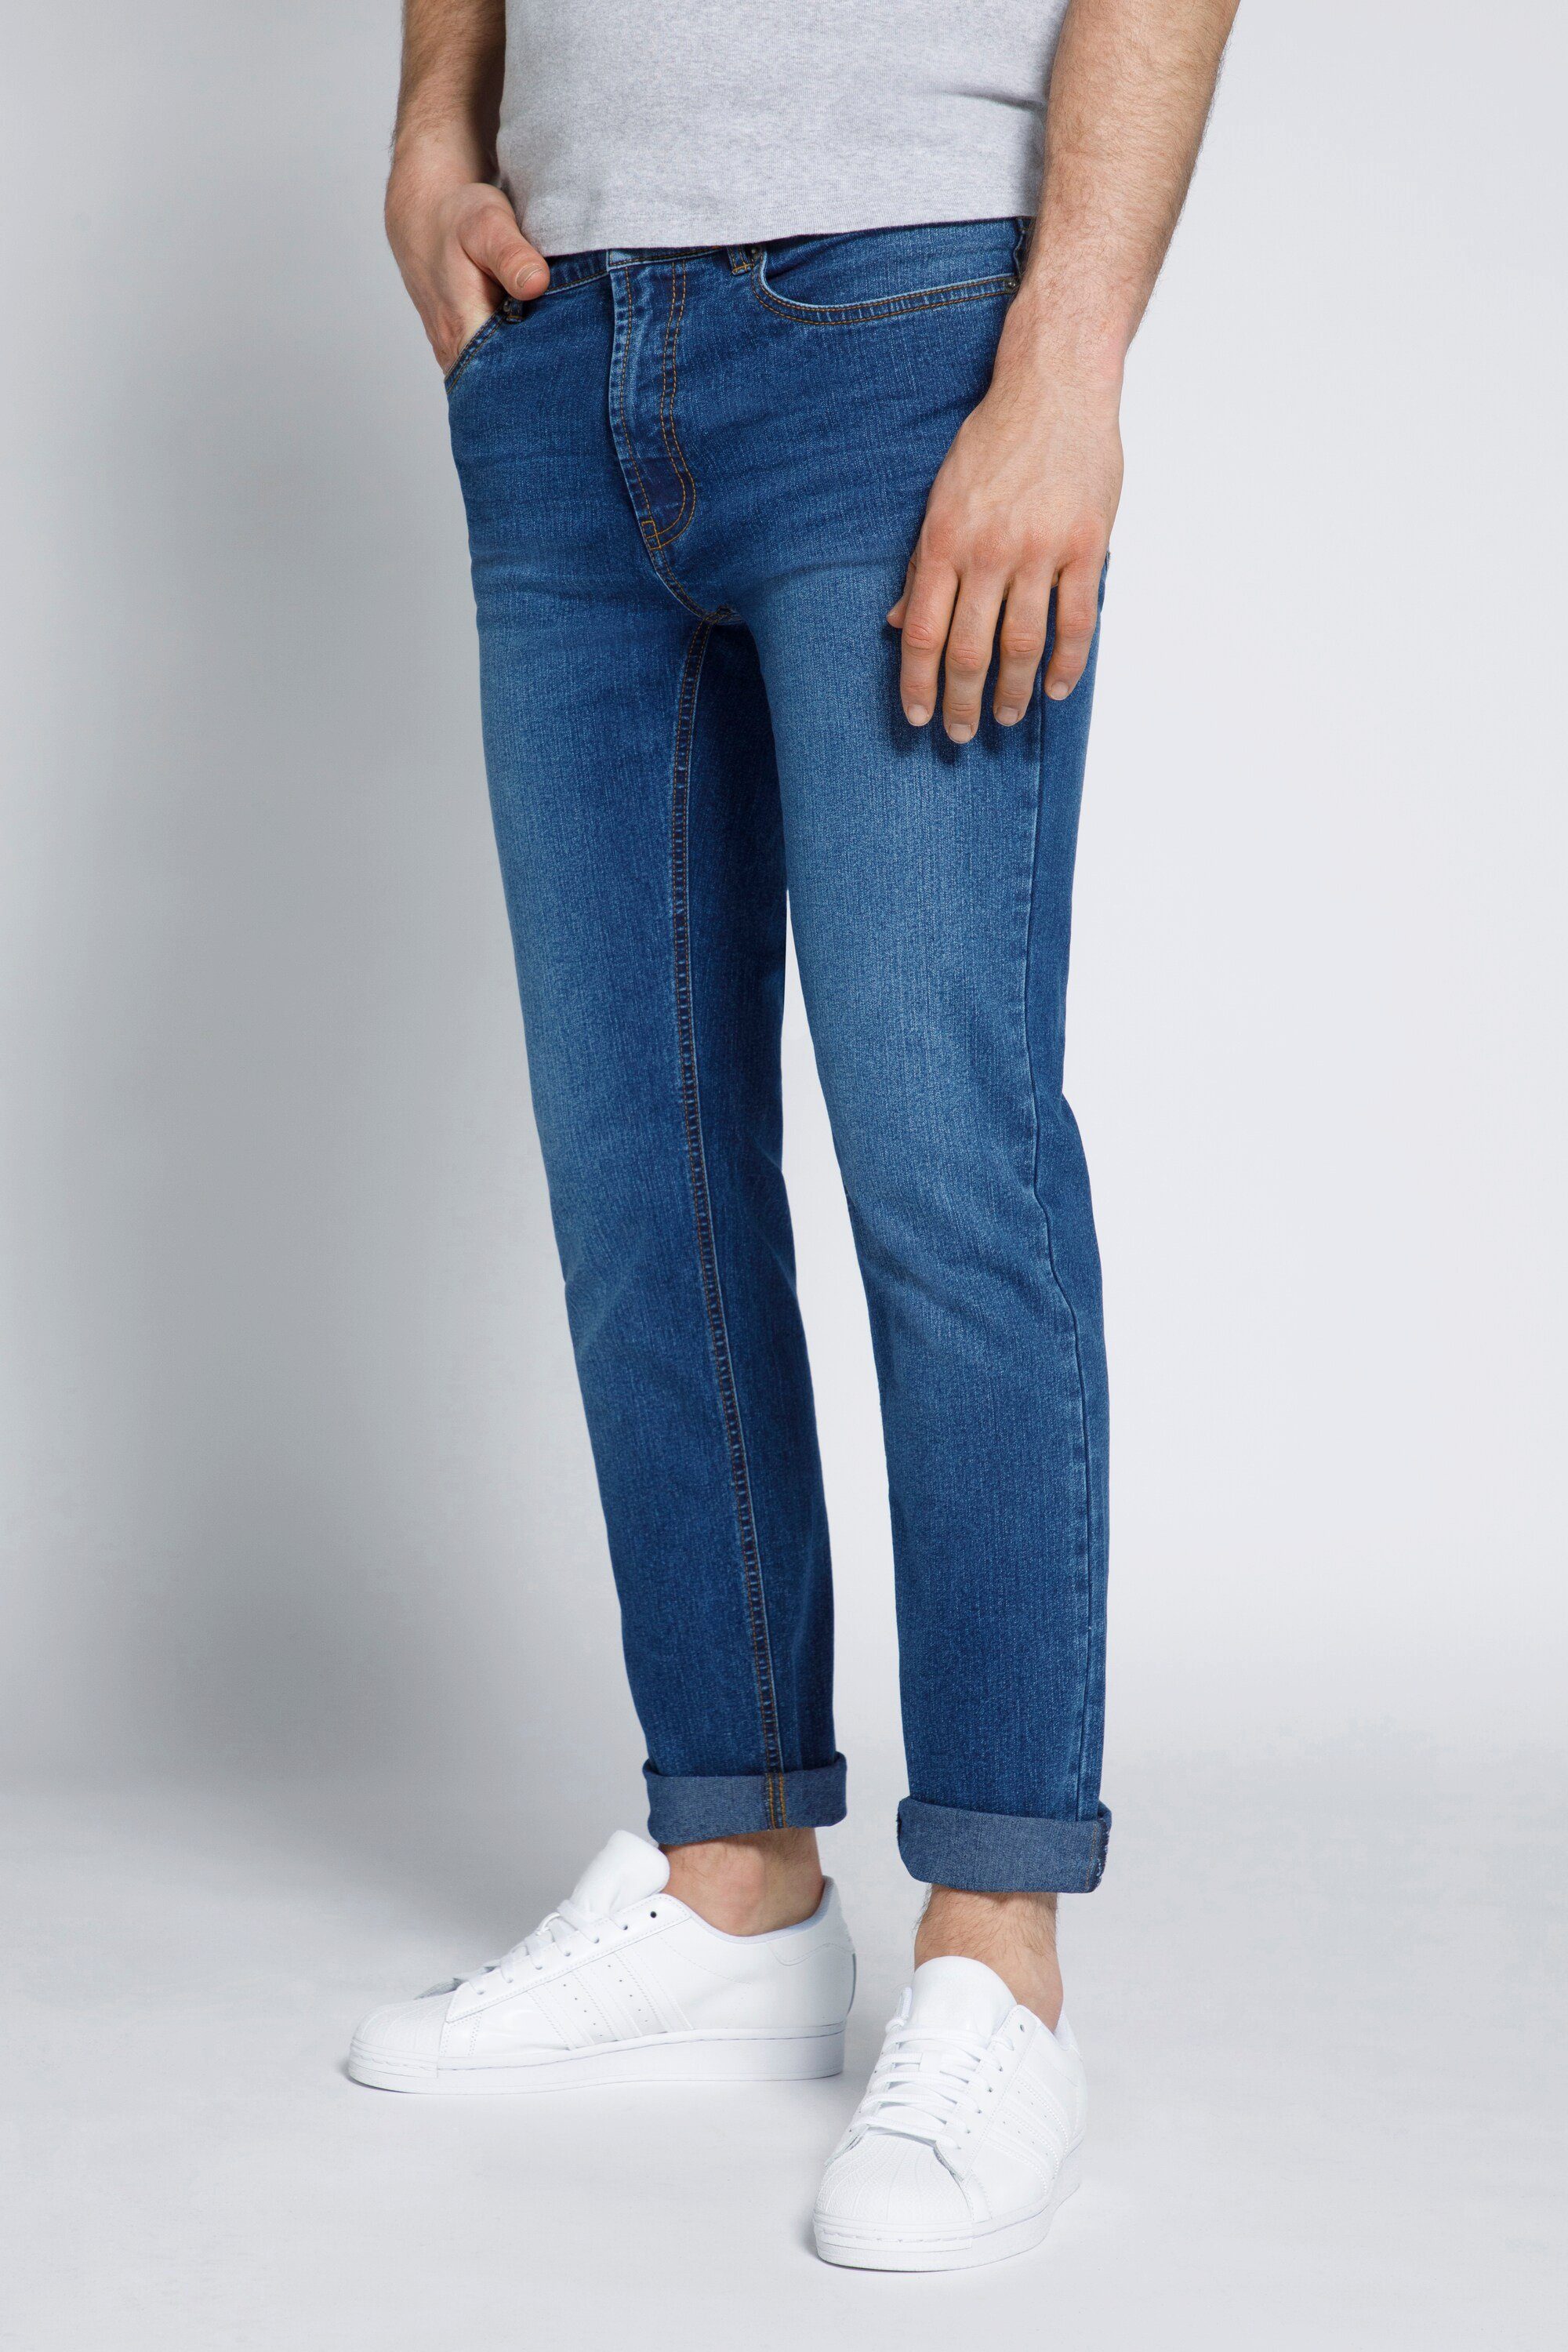 STHUGE 5-Pocket-Jeans STHUGE Herren Jeans Modern Fit blue denim